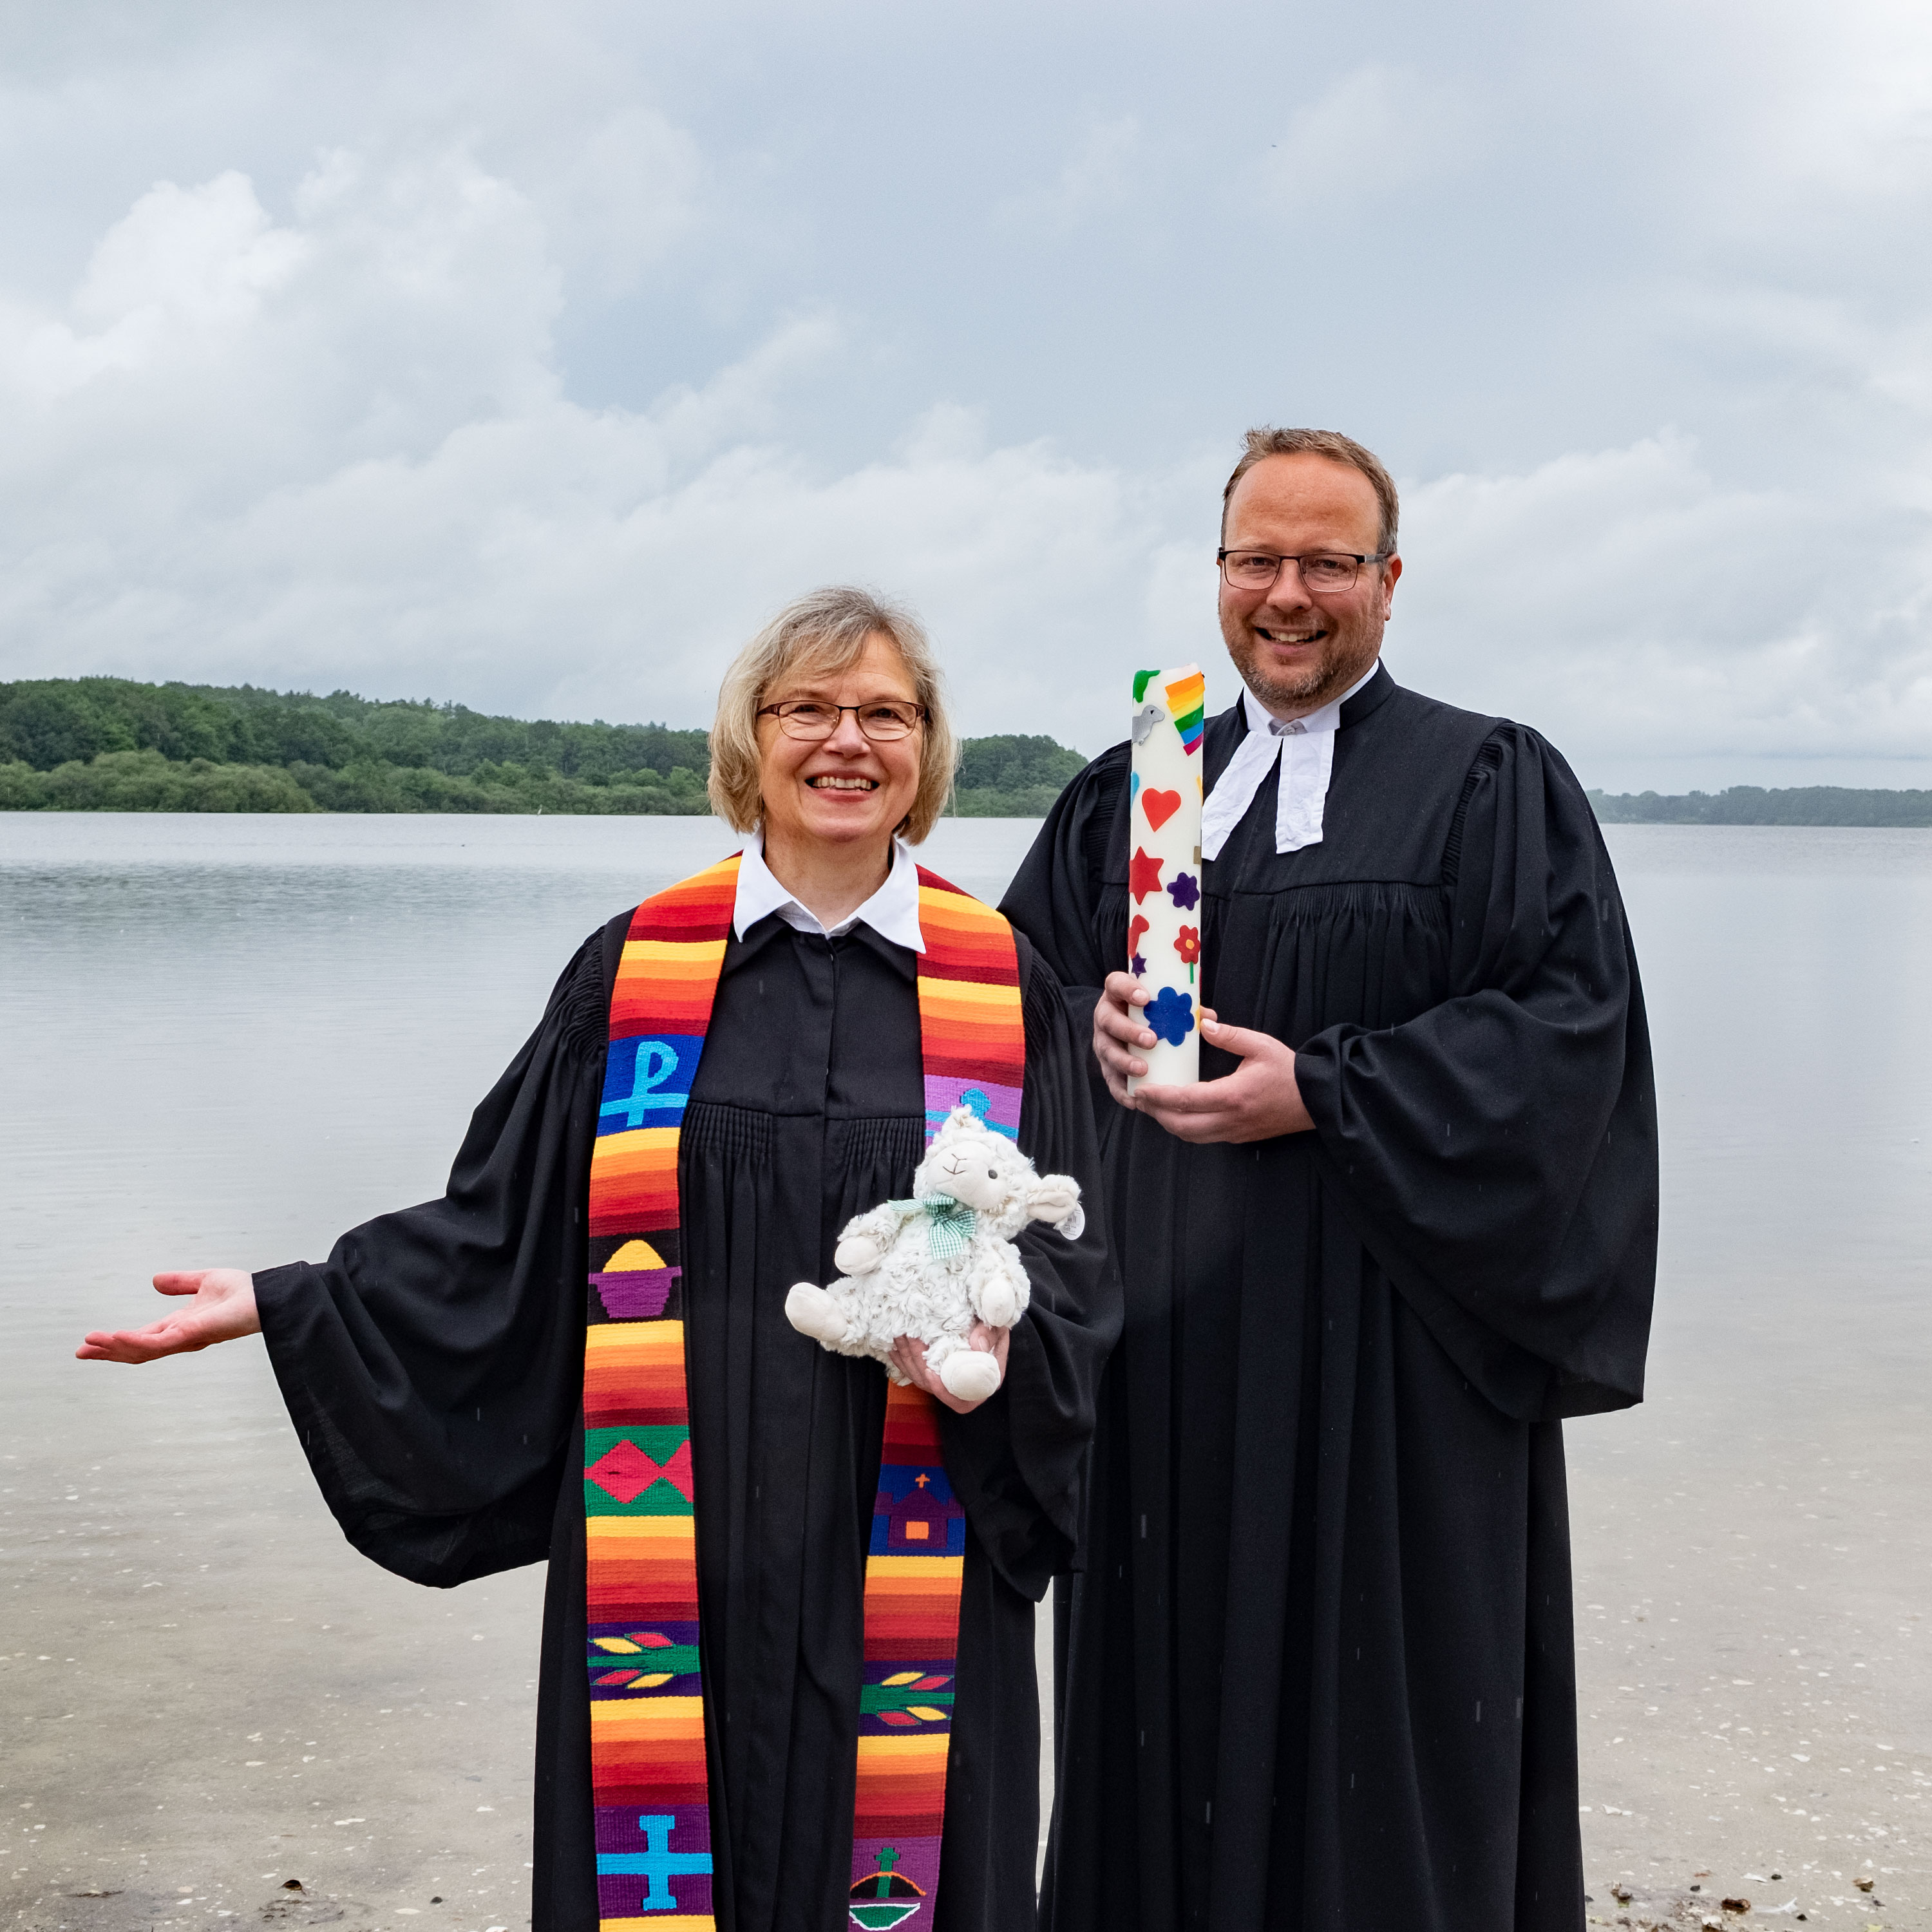 Pastorin Martina Ulrich und Pastor Marcus Book am Ufer des Einfelder Sees in Neumünster